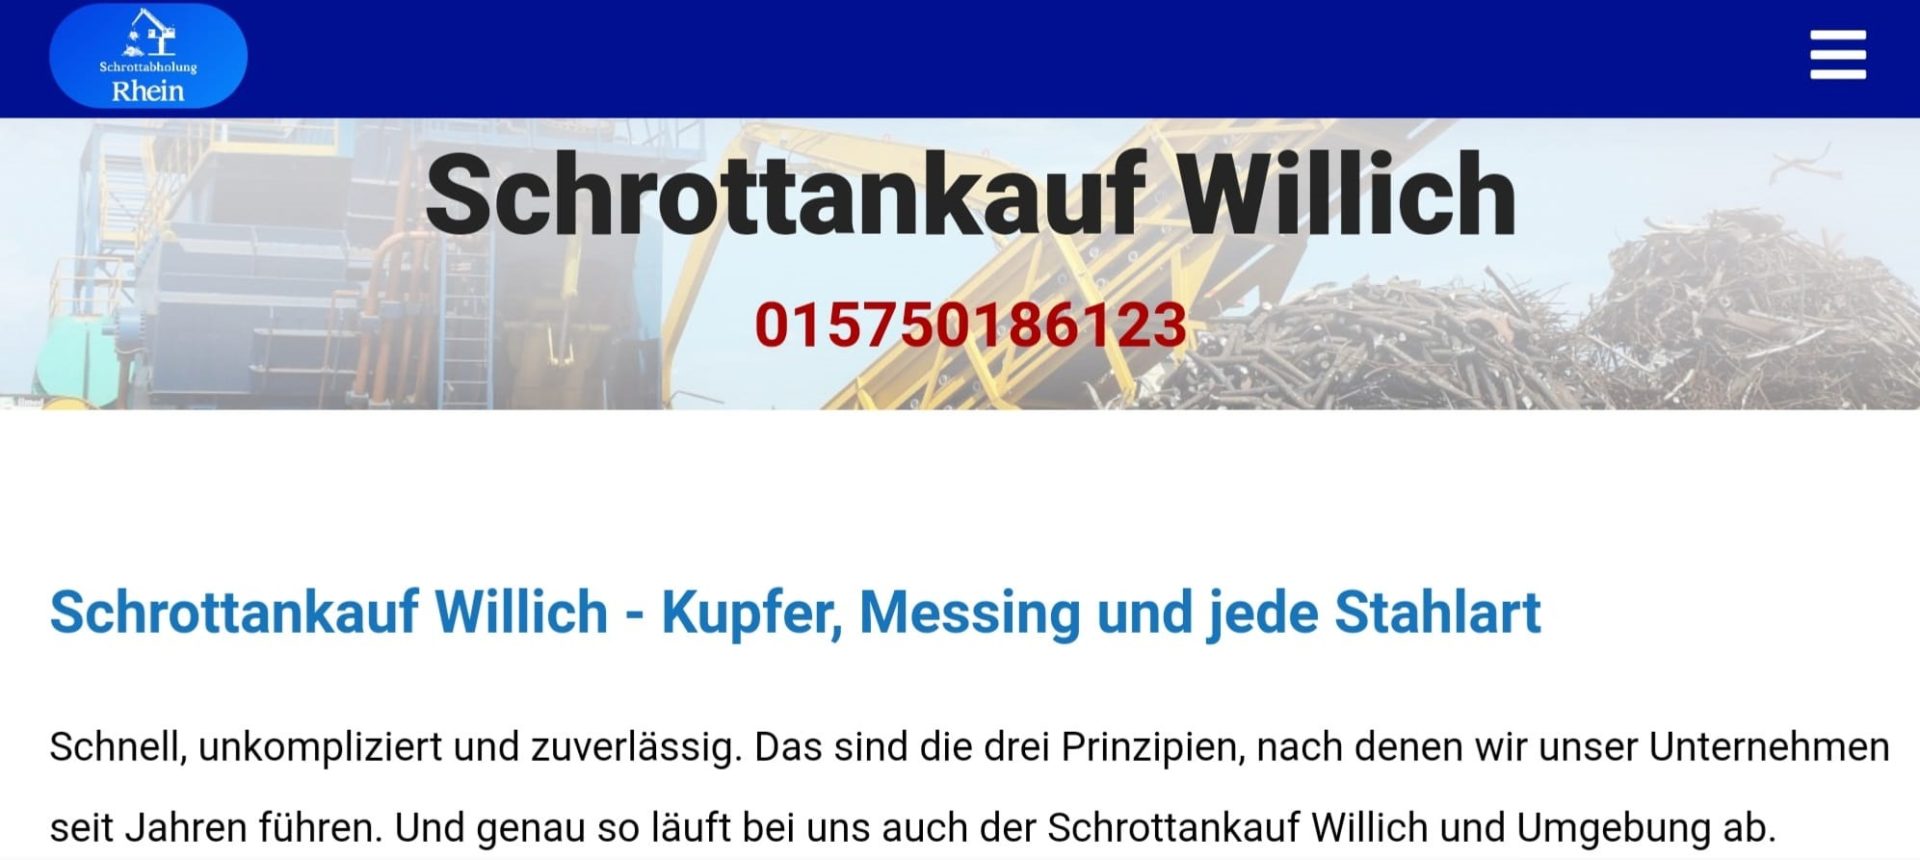 Schrottankauf Willich-78afbab1